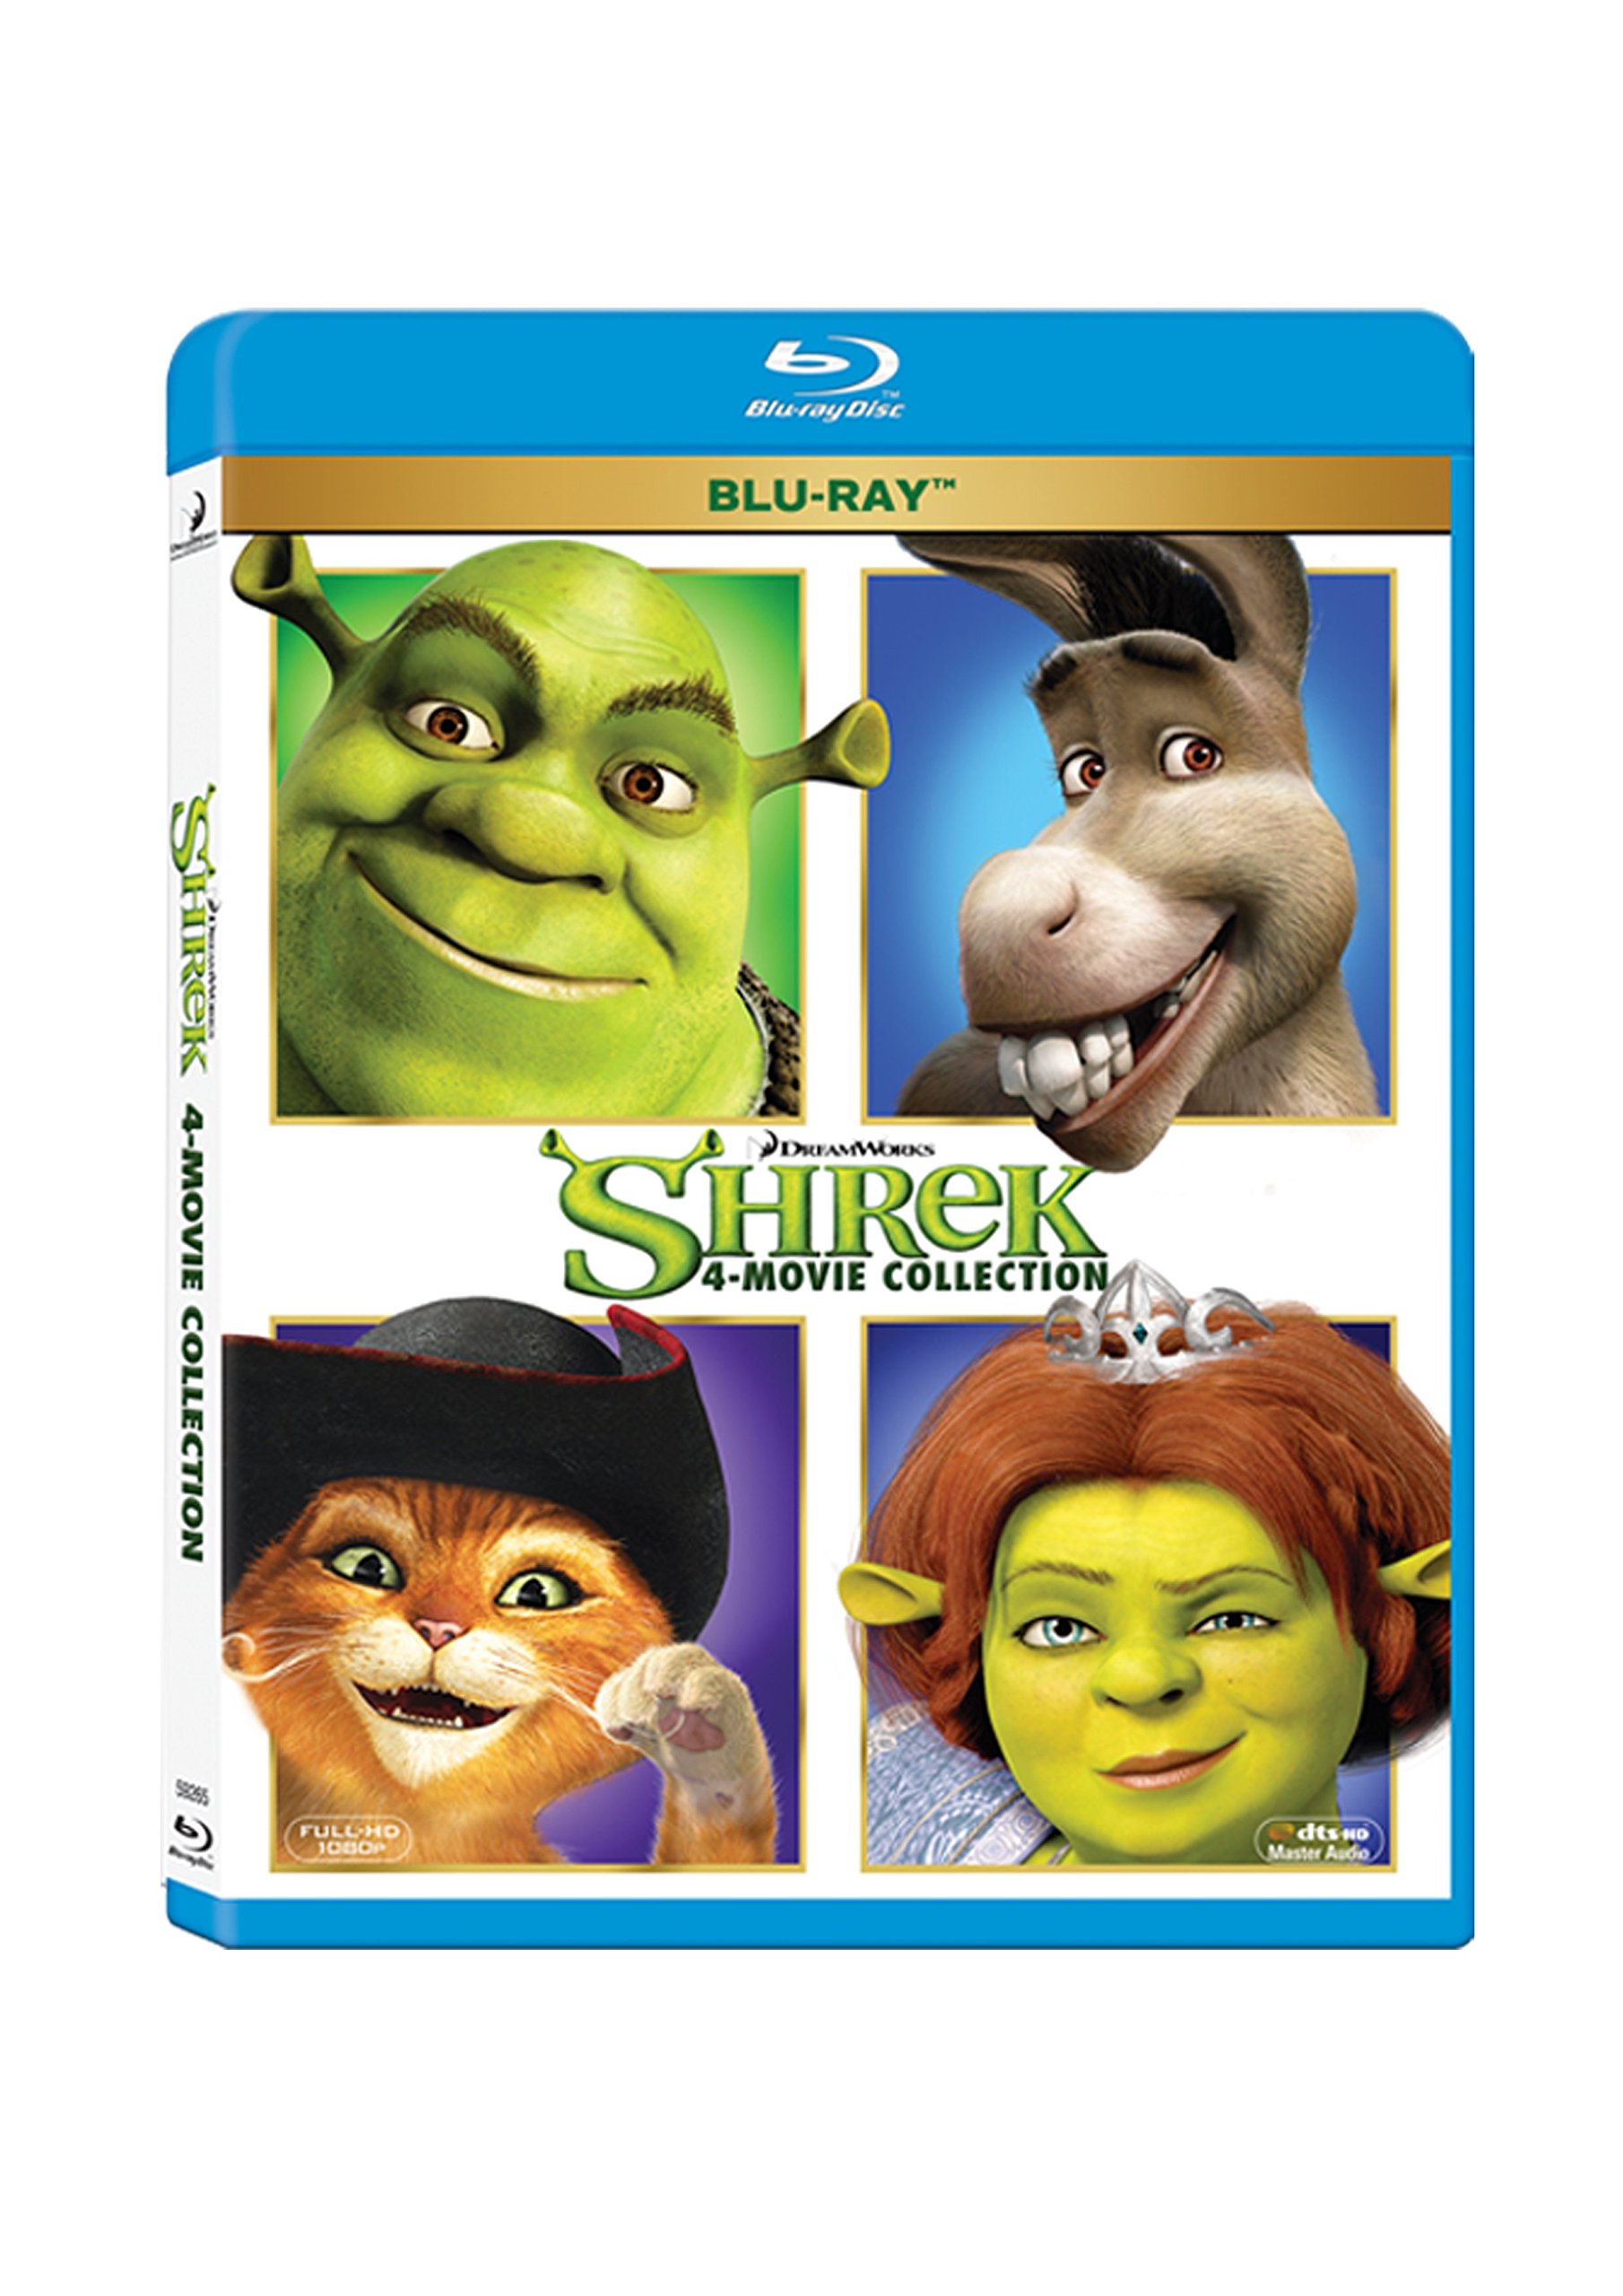 shrek-4-movies-collection-shrek-shrek-2-shrek-the-third-shrek-forever-after